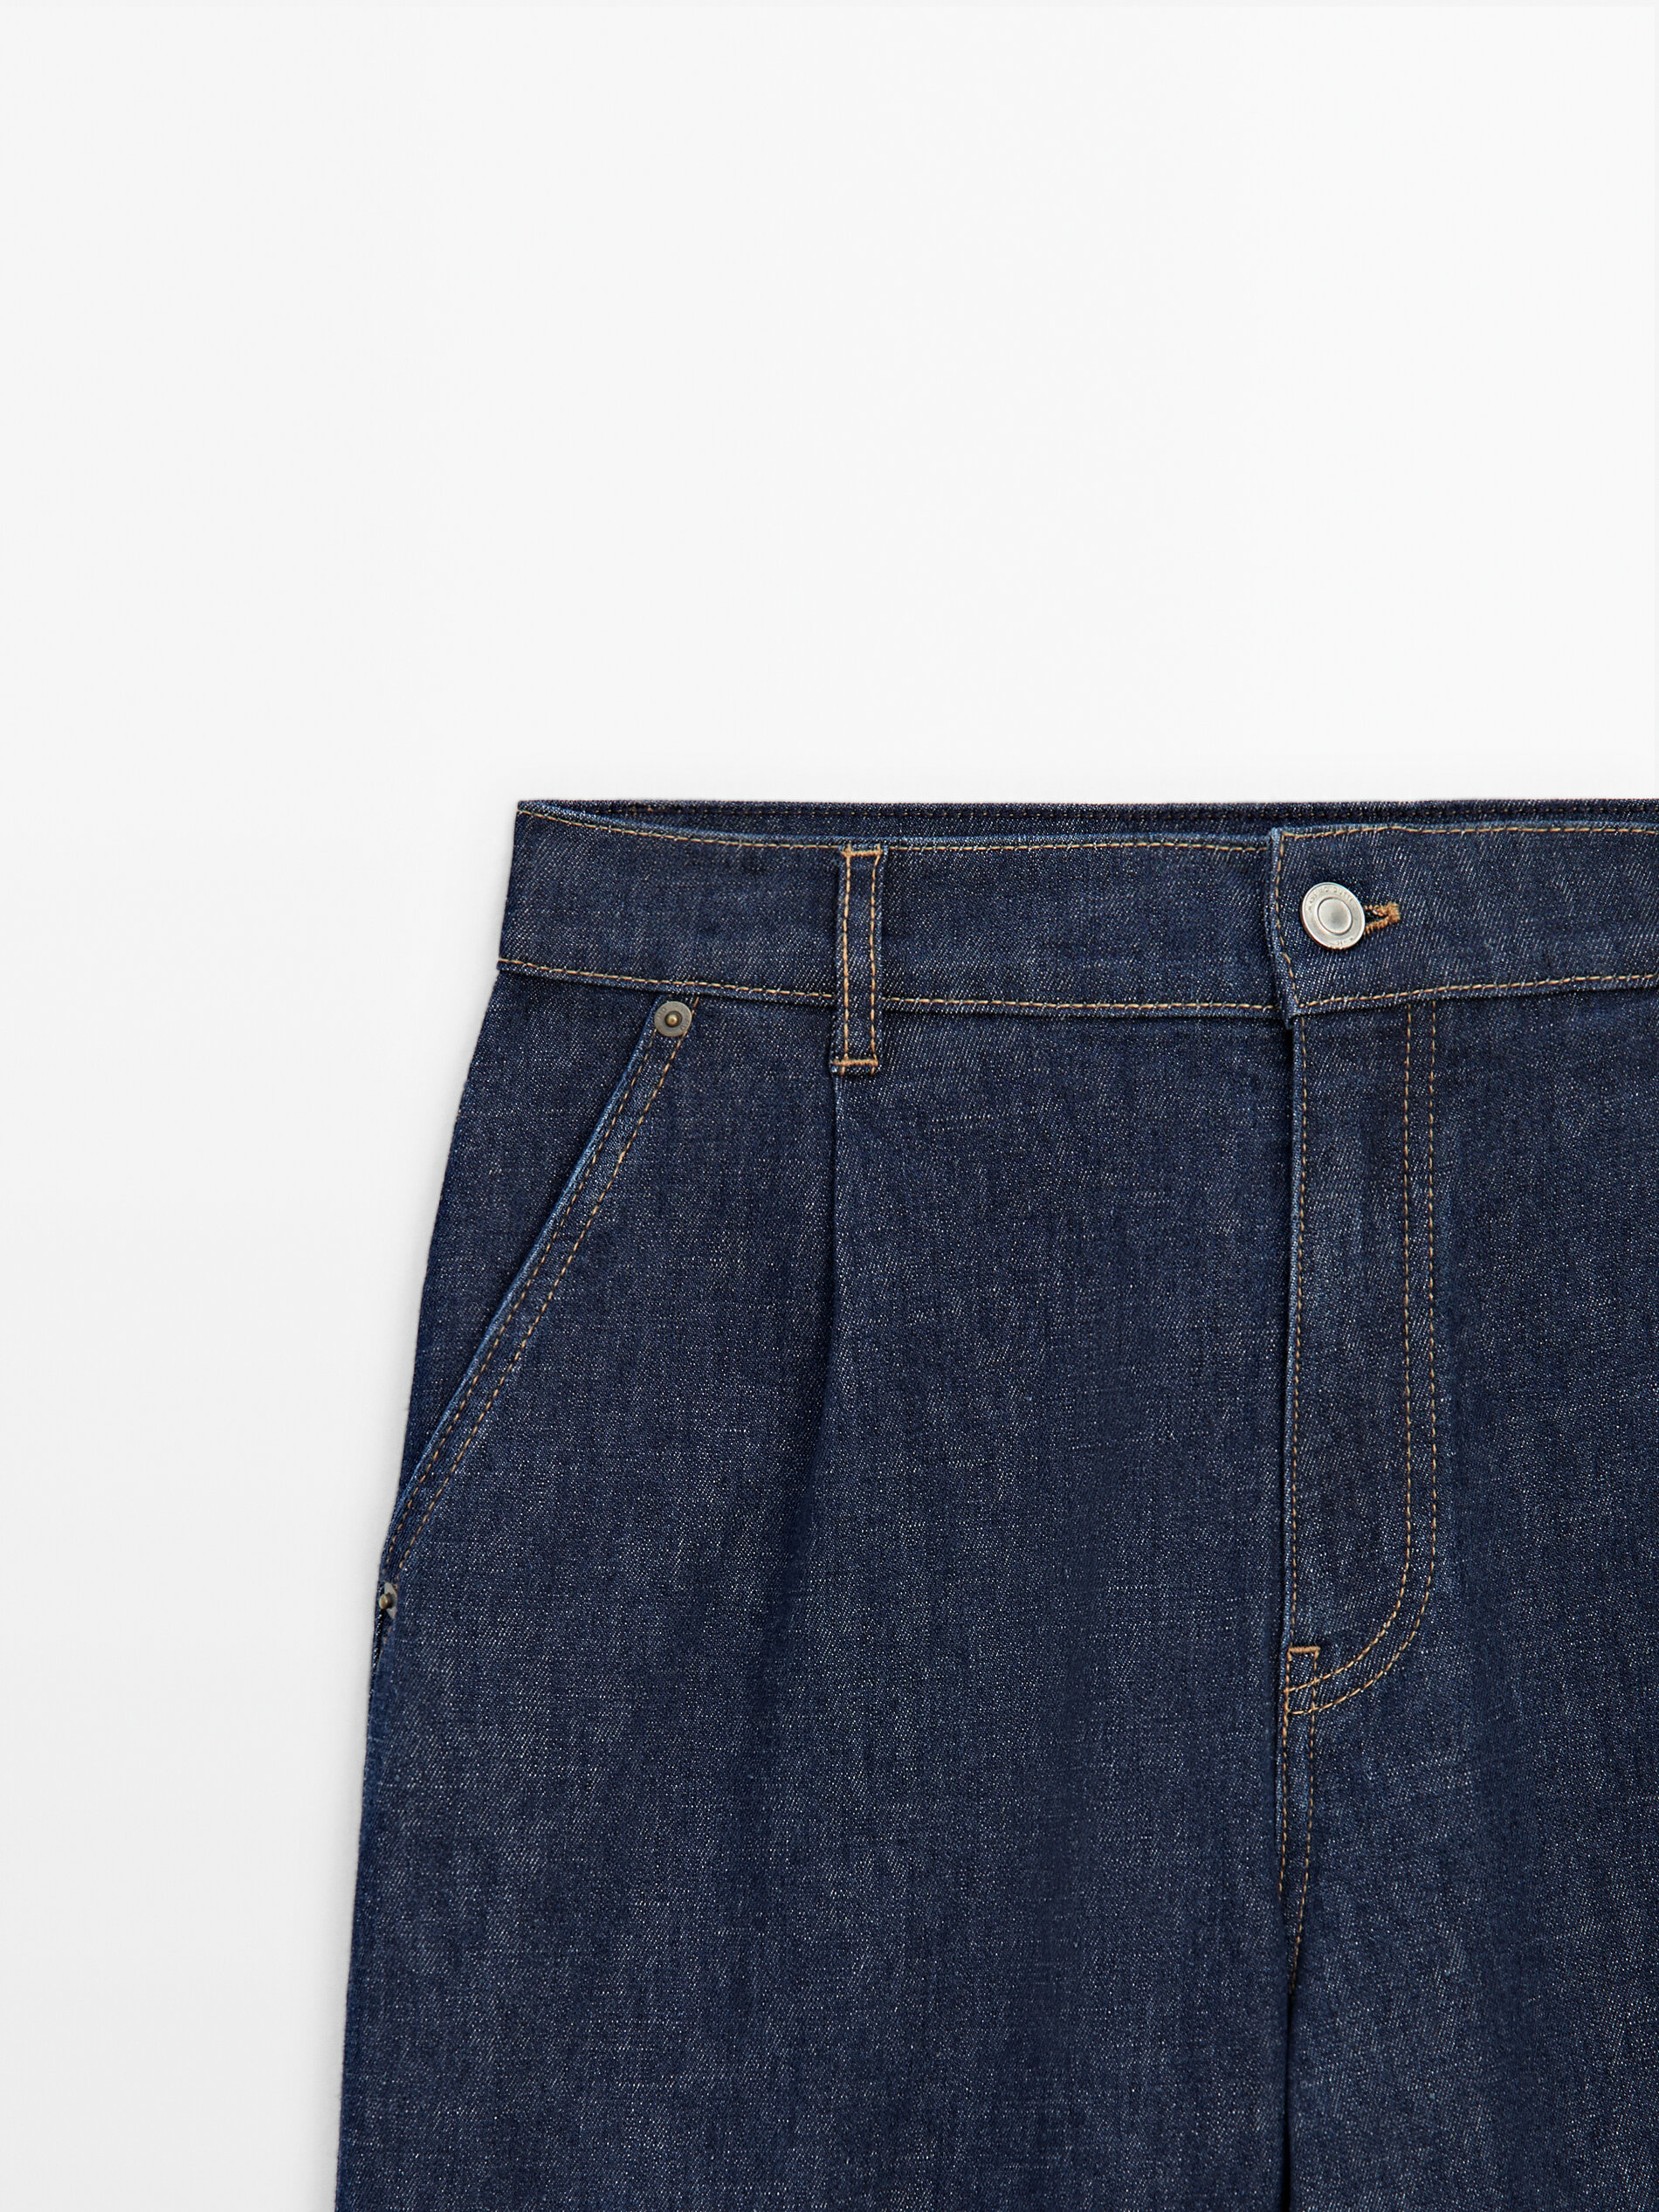 Jeans wide leg detalle pinza